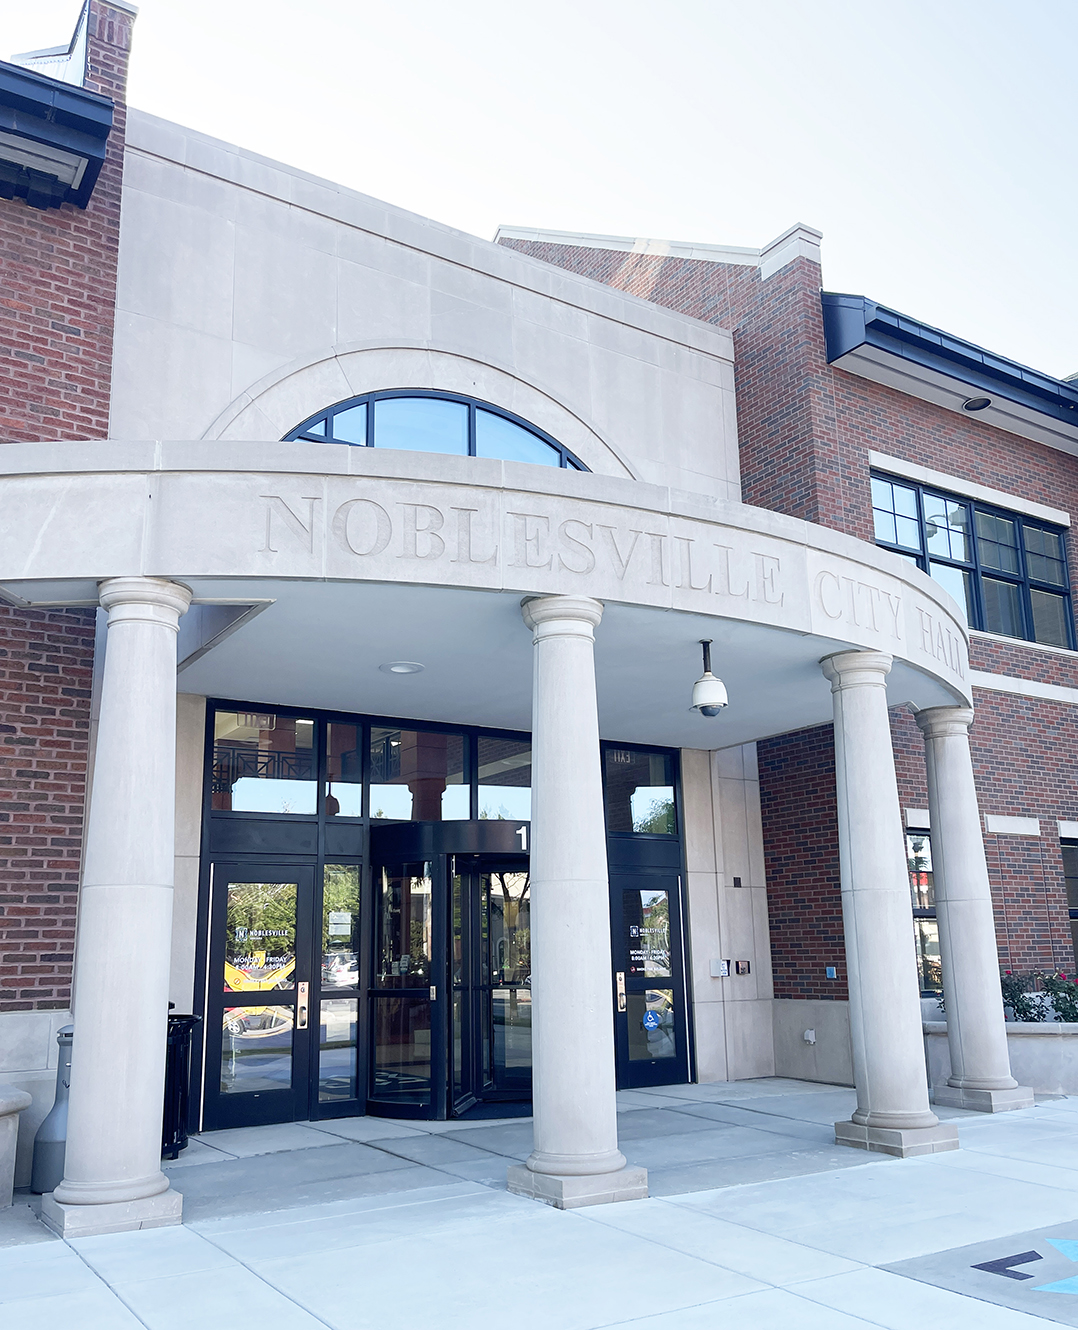 Noblesville council approves various ordinances